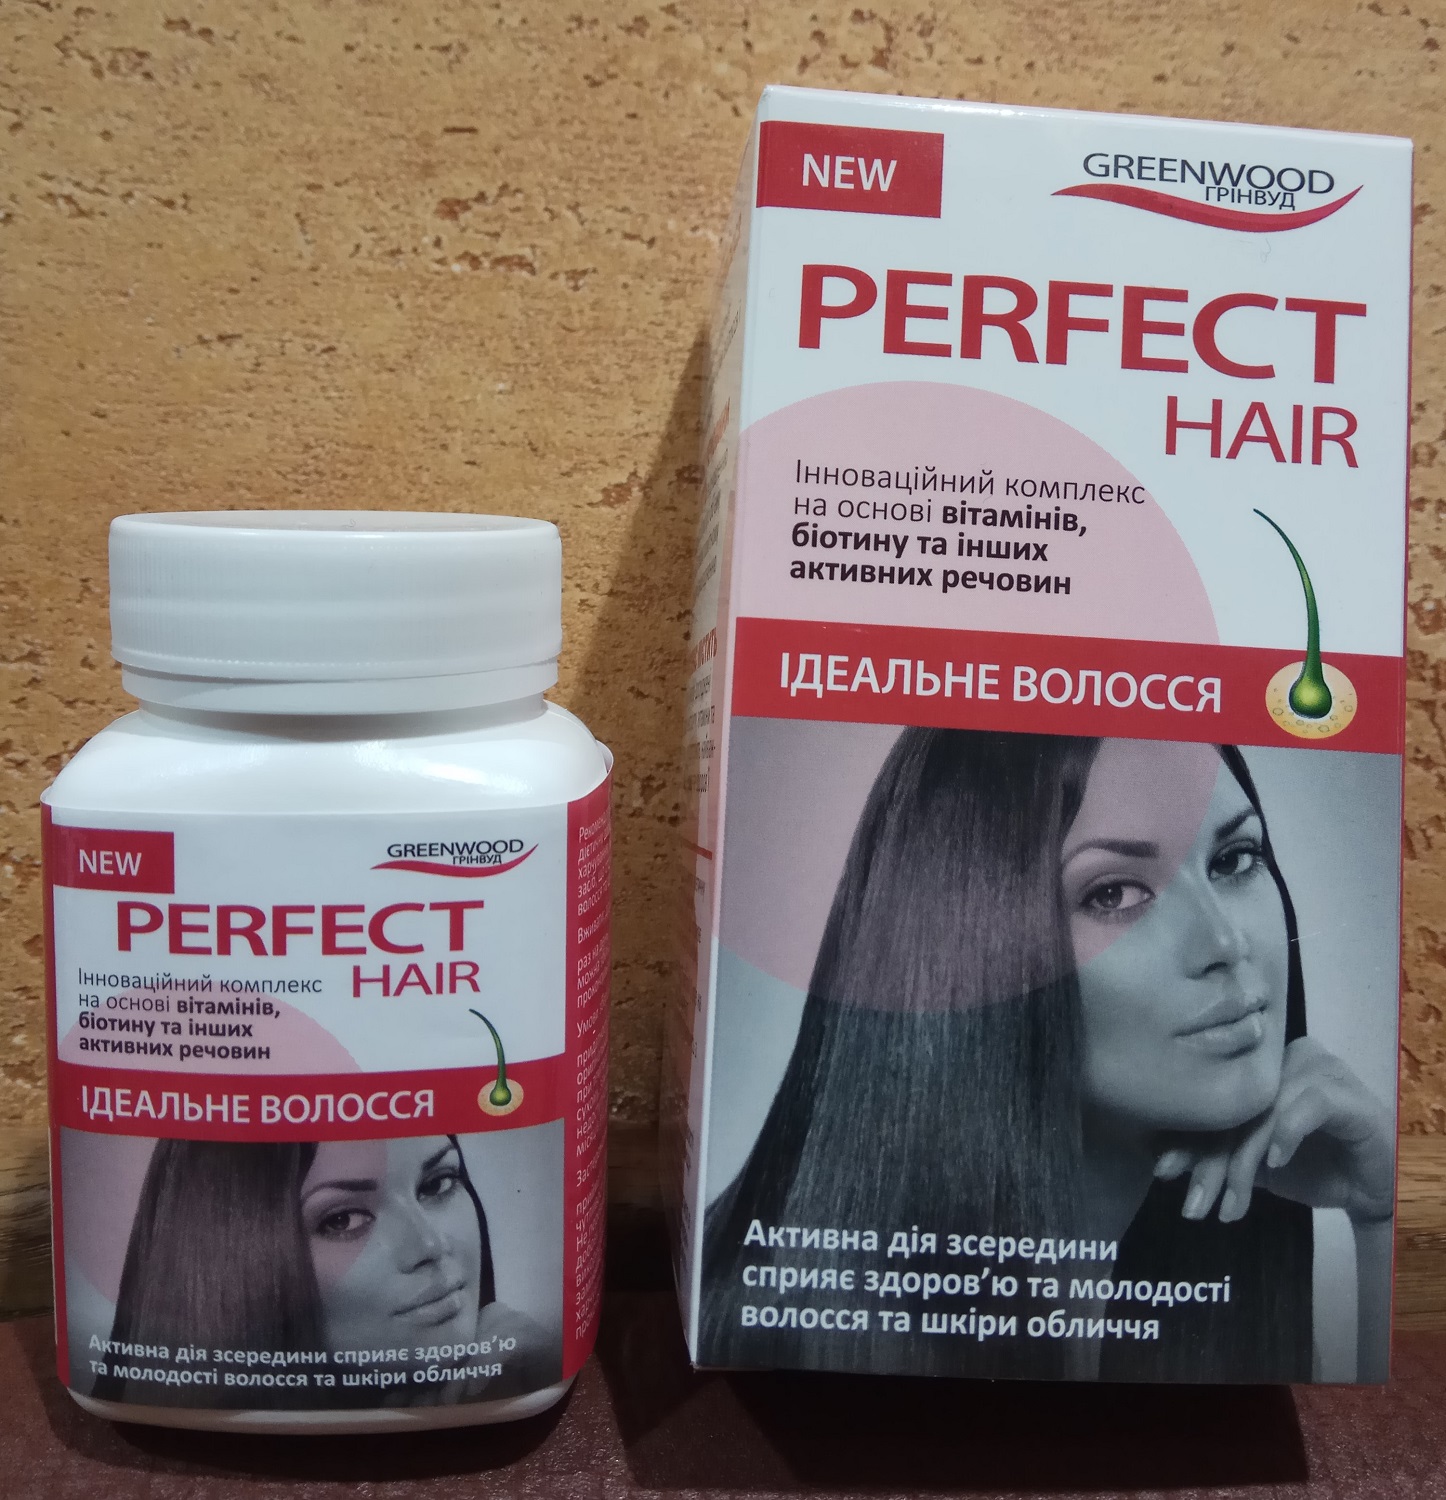 Идеальные волосы 30 капс - витамины, биотин, активные вещества для здоровья волос и молодости кожи лица